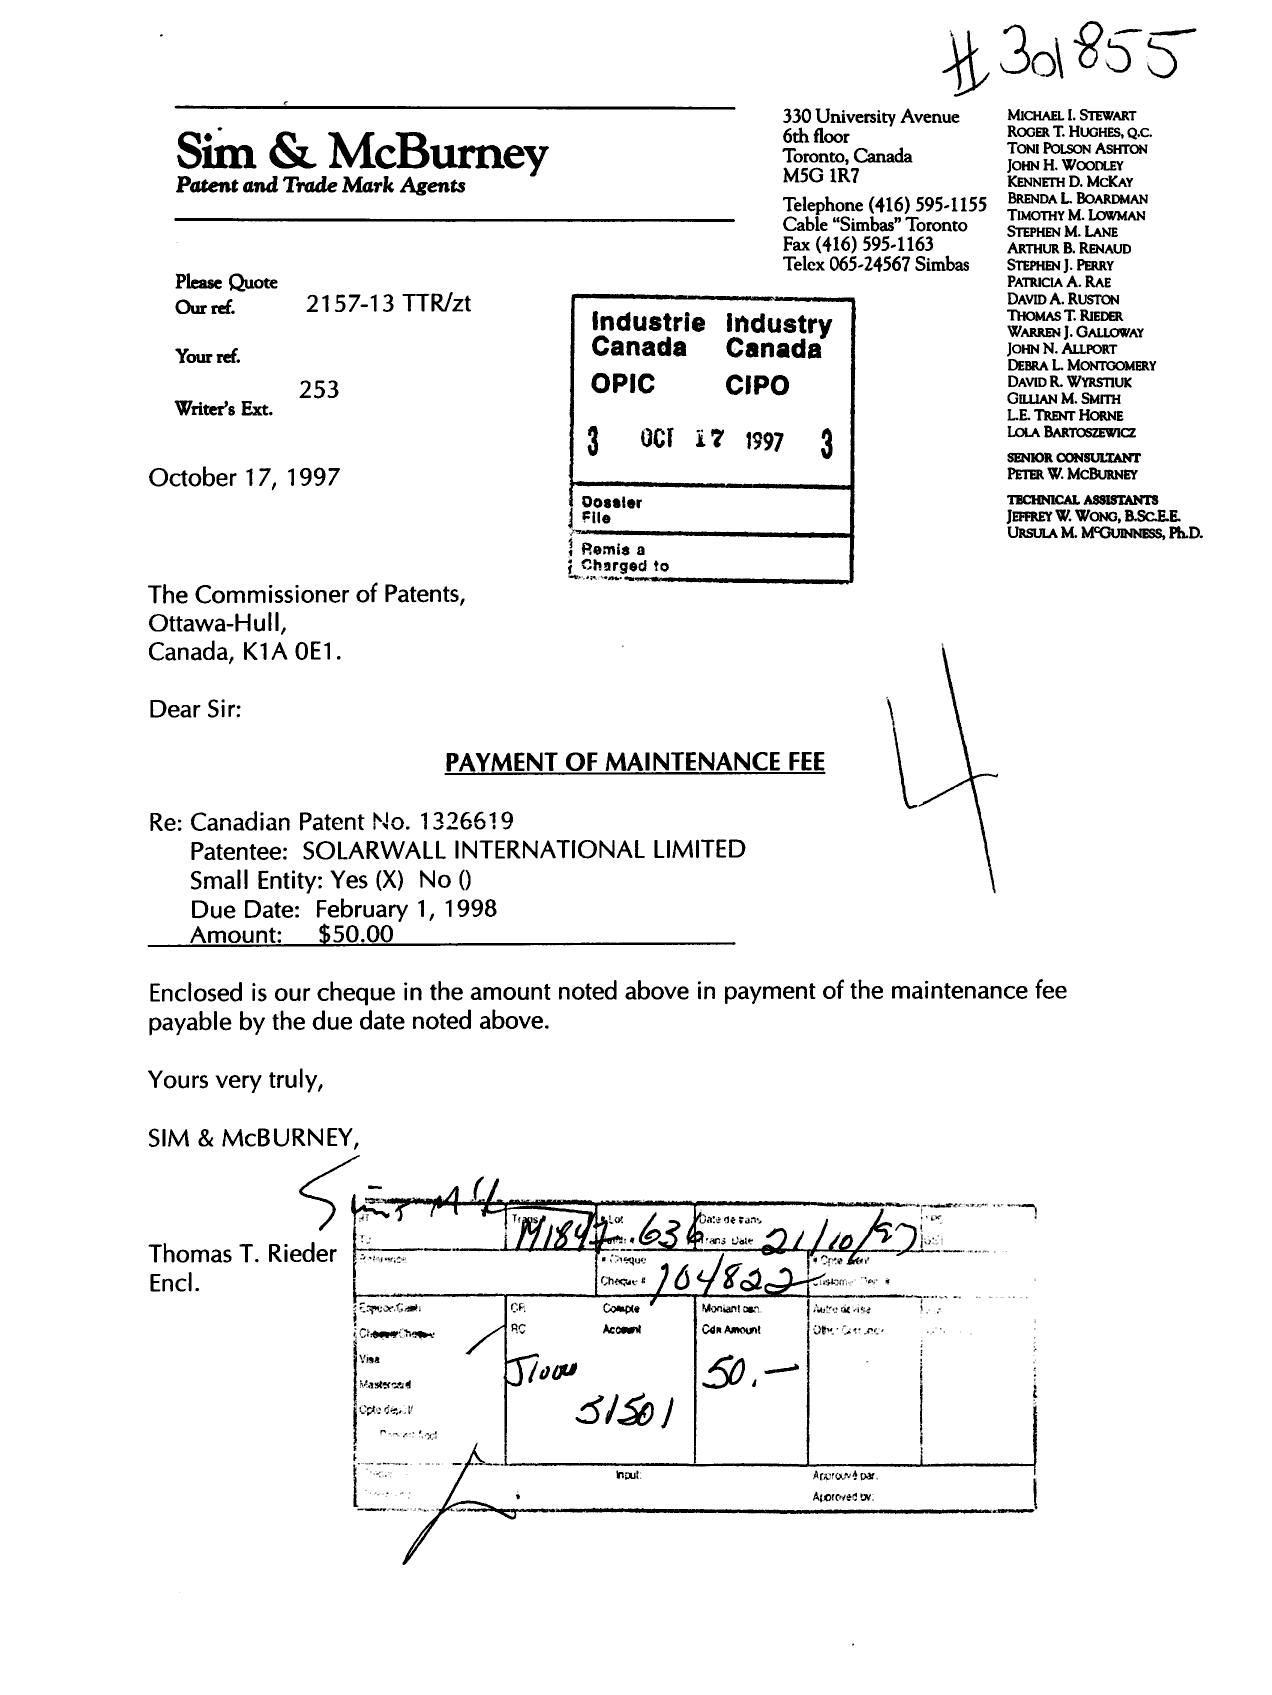 Document de brevet canadien 1326619. Taxes 19971017. Image 1 de 1